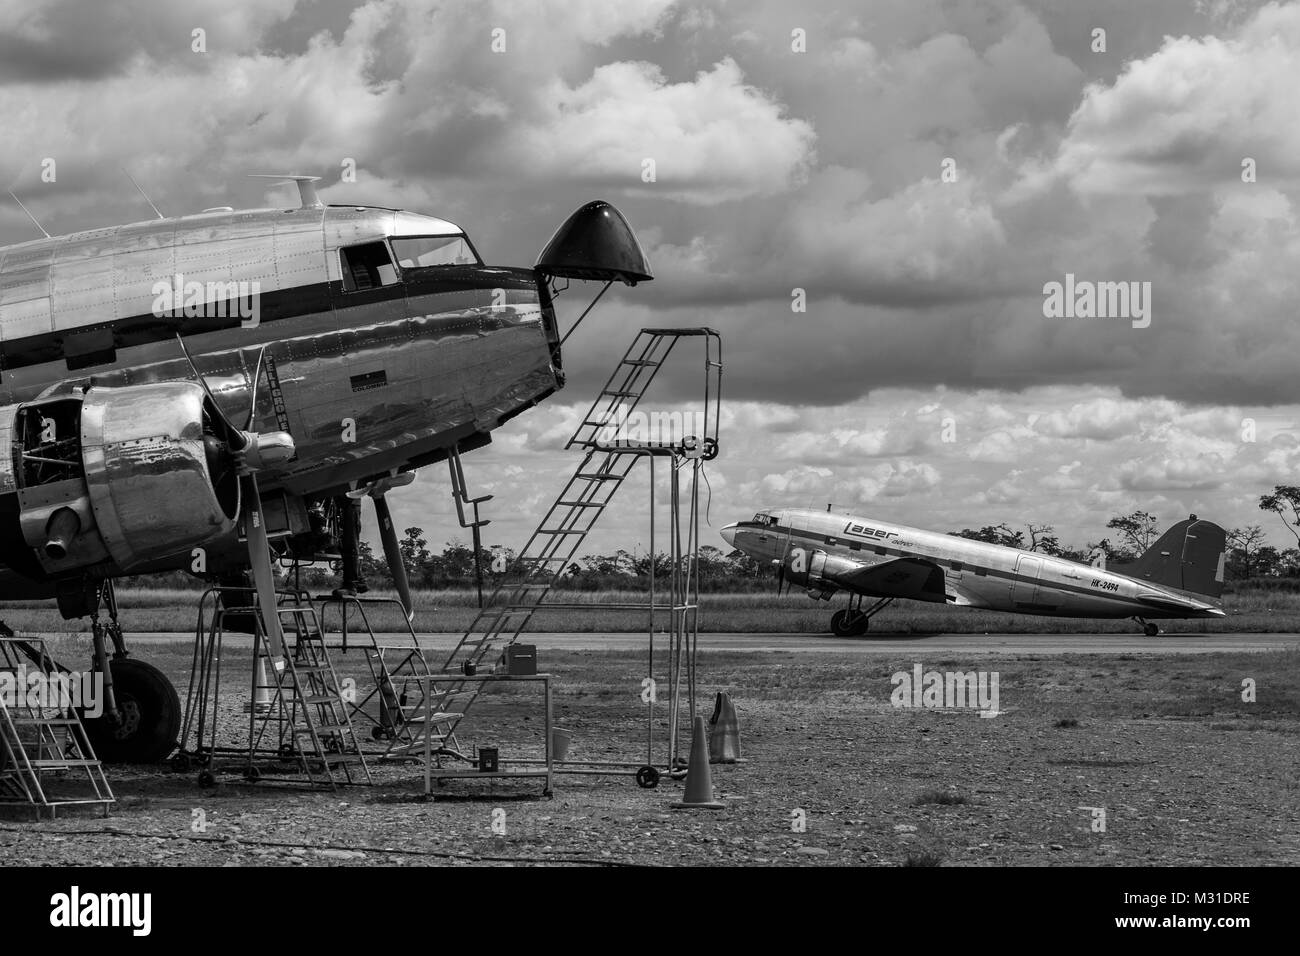 Un Douglas DC-3 est vu garé au cours d'une vérification de maintenance de routine à l'aéroport de Villavicencio, Colombie. Banque D'Images